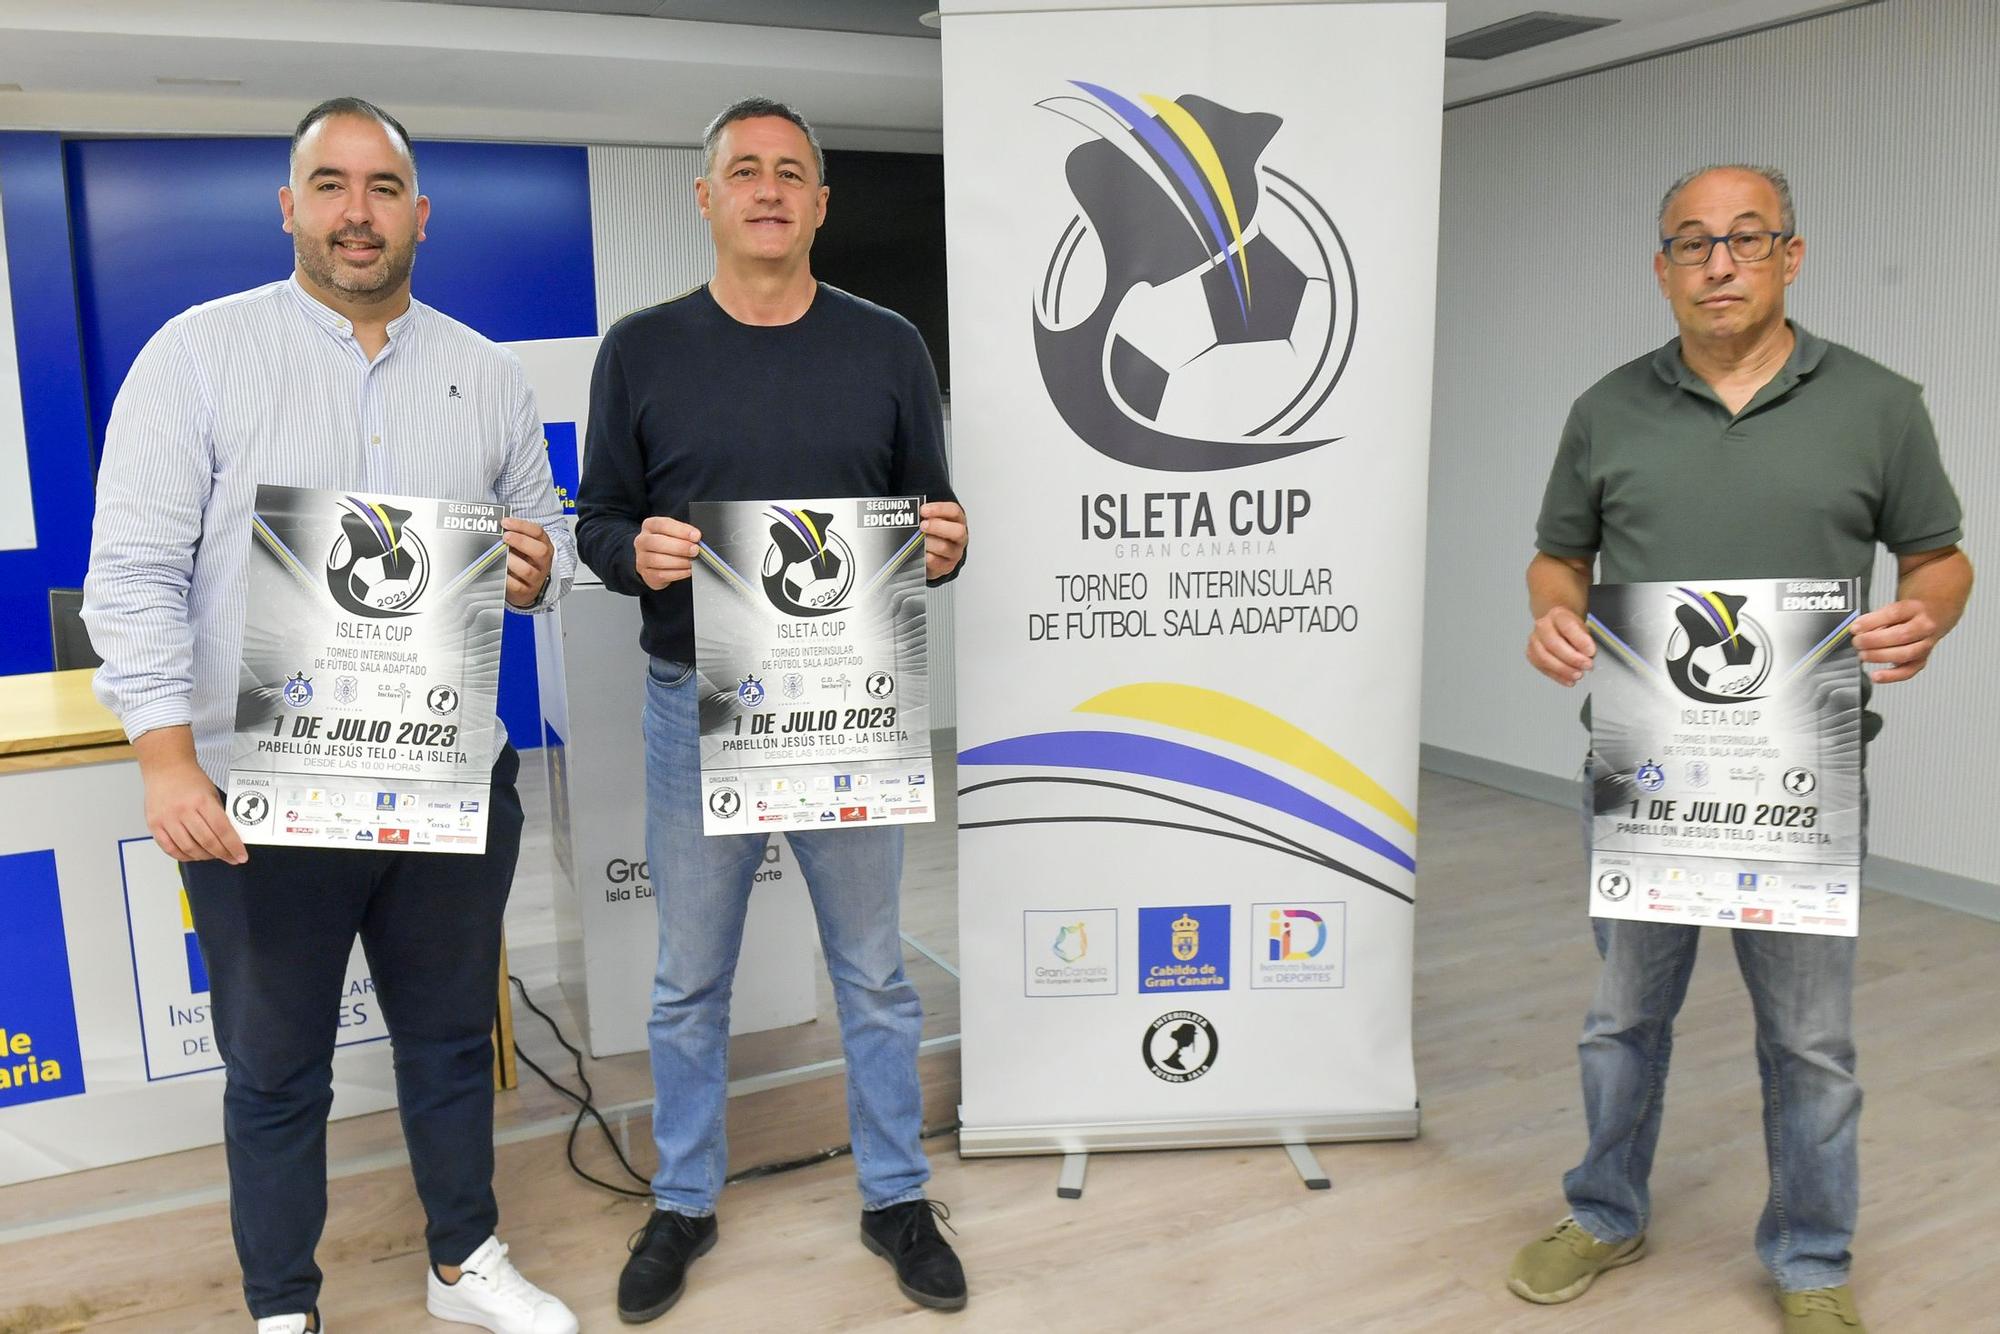 Presentación del Isleta Cup. Torneo Interinsular de Fútbol Sala Adaptado